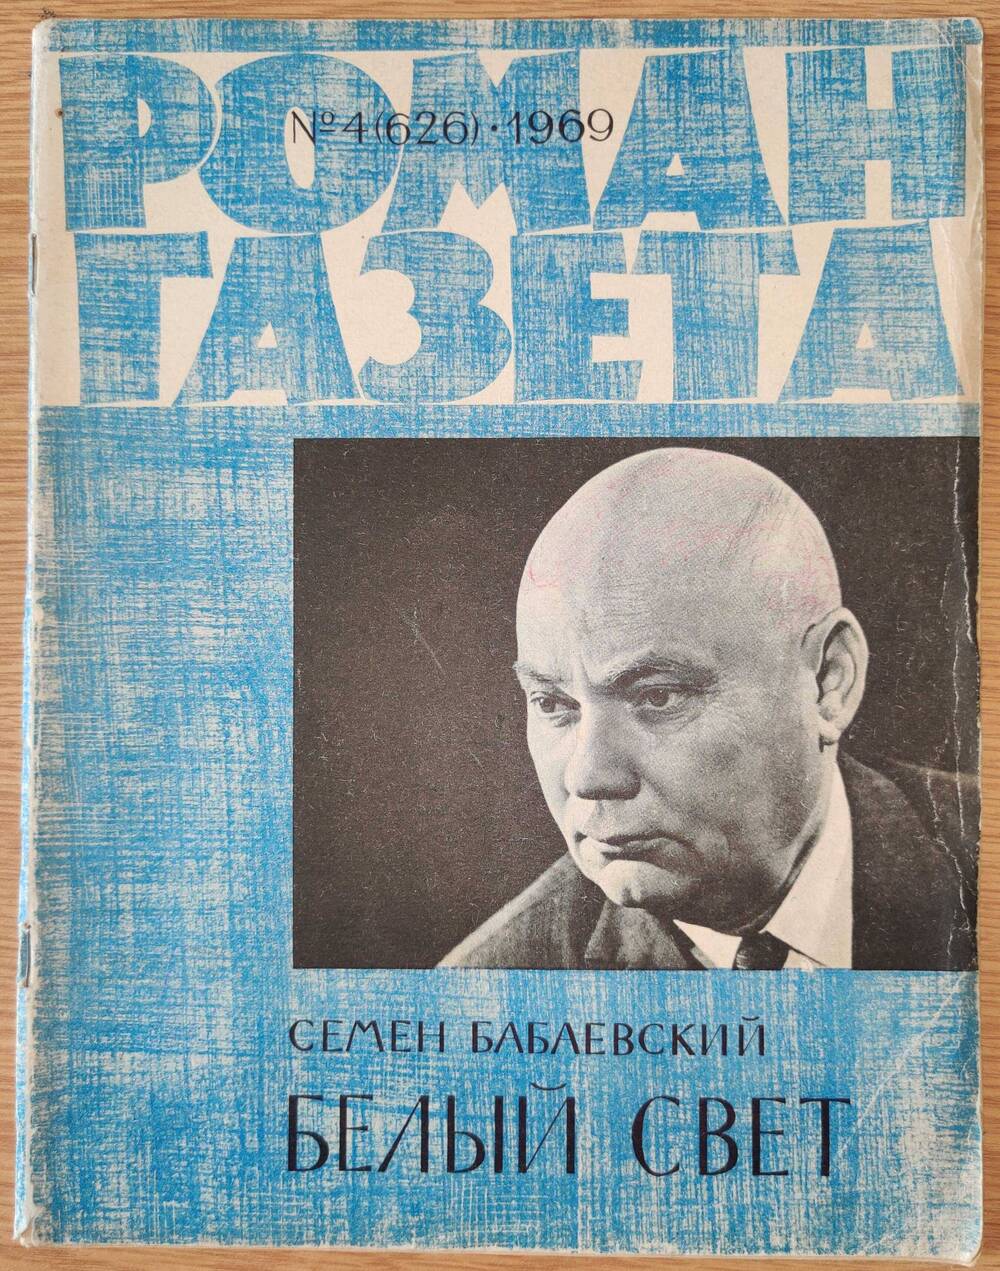 Журнал «Роман - Газета» №4 (626). 1969